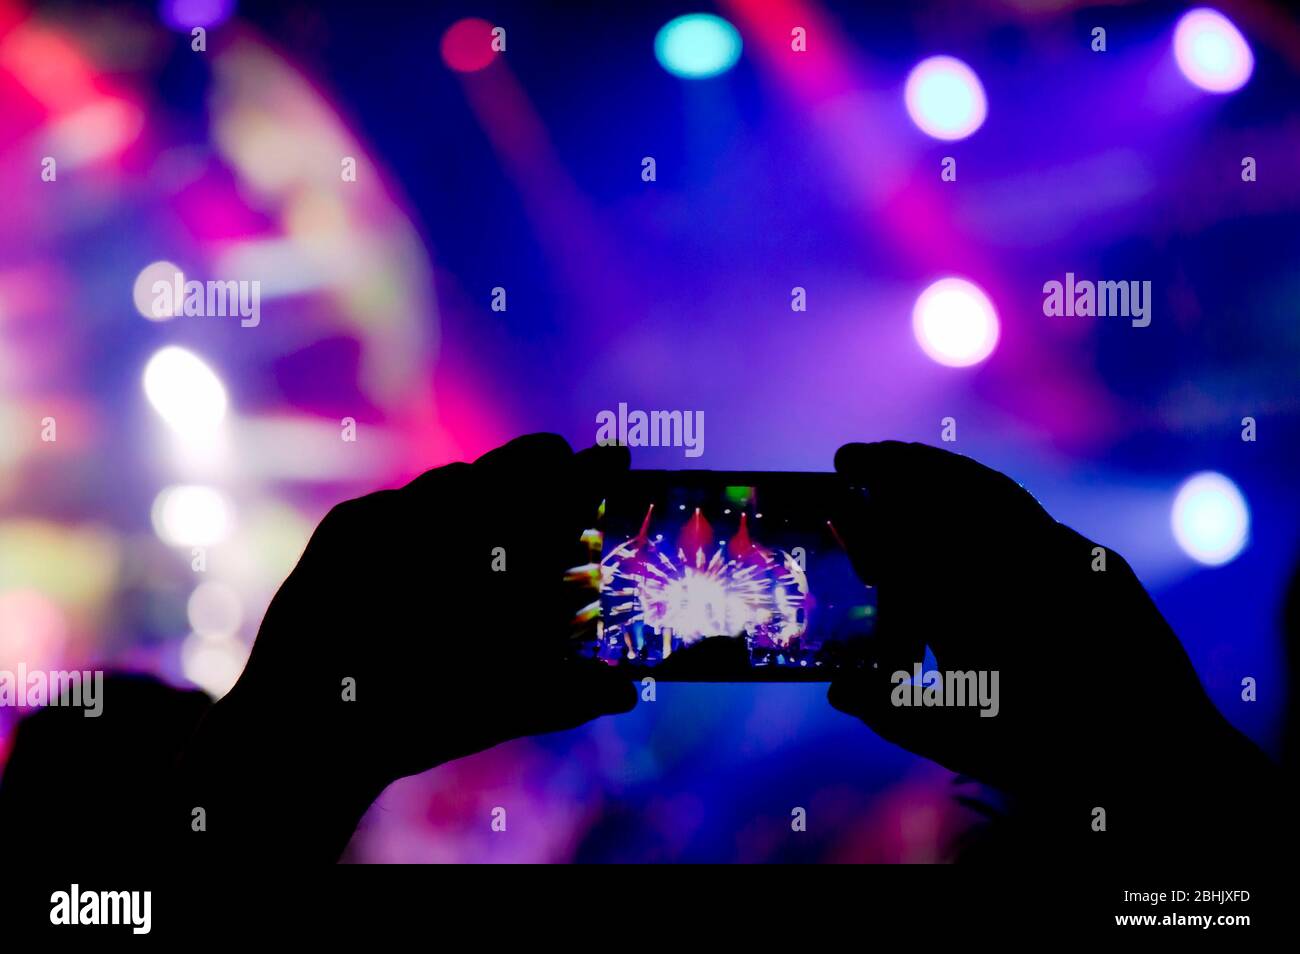 Das Sammeln von digitalem Speicher verliert die Fähigkeit, anwesend zu sein, Silhouette einer Person, die die Lichteffekte der Konzertbühne mit dem Smartphone aufnimmt Stockfoto